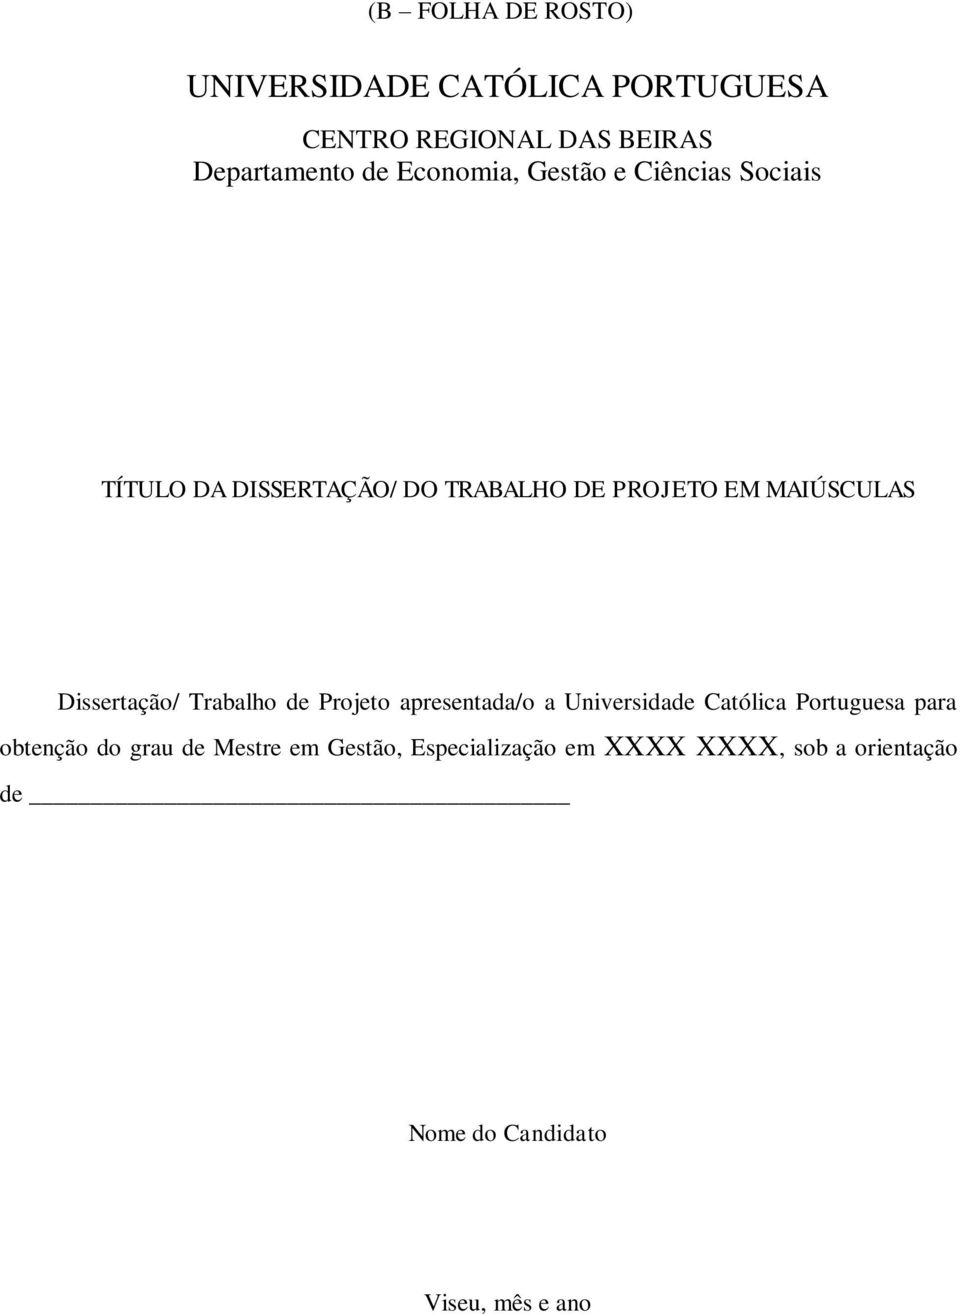 Dissertação/ Trabalho de Projeto apresentada/o a Universidade Católica Portuguesa para obtenção do